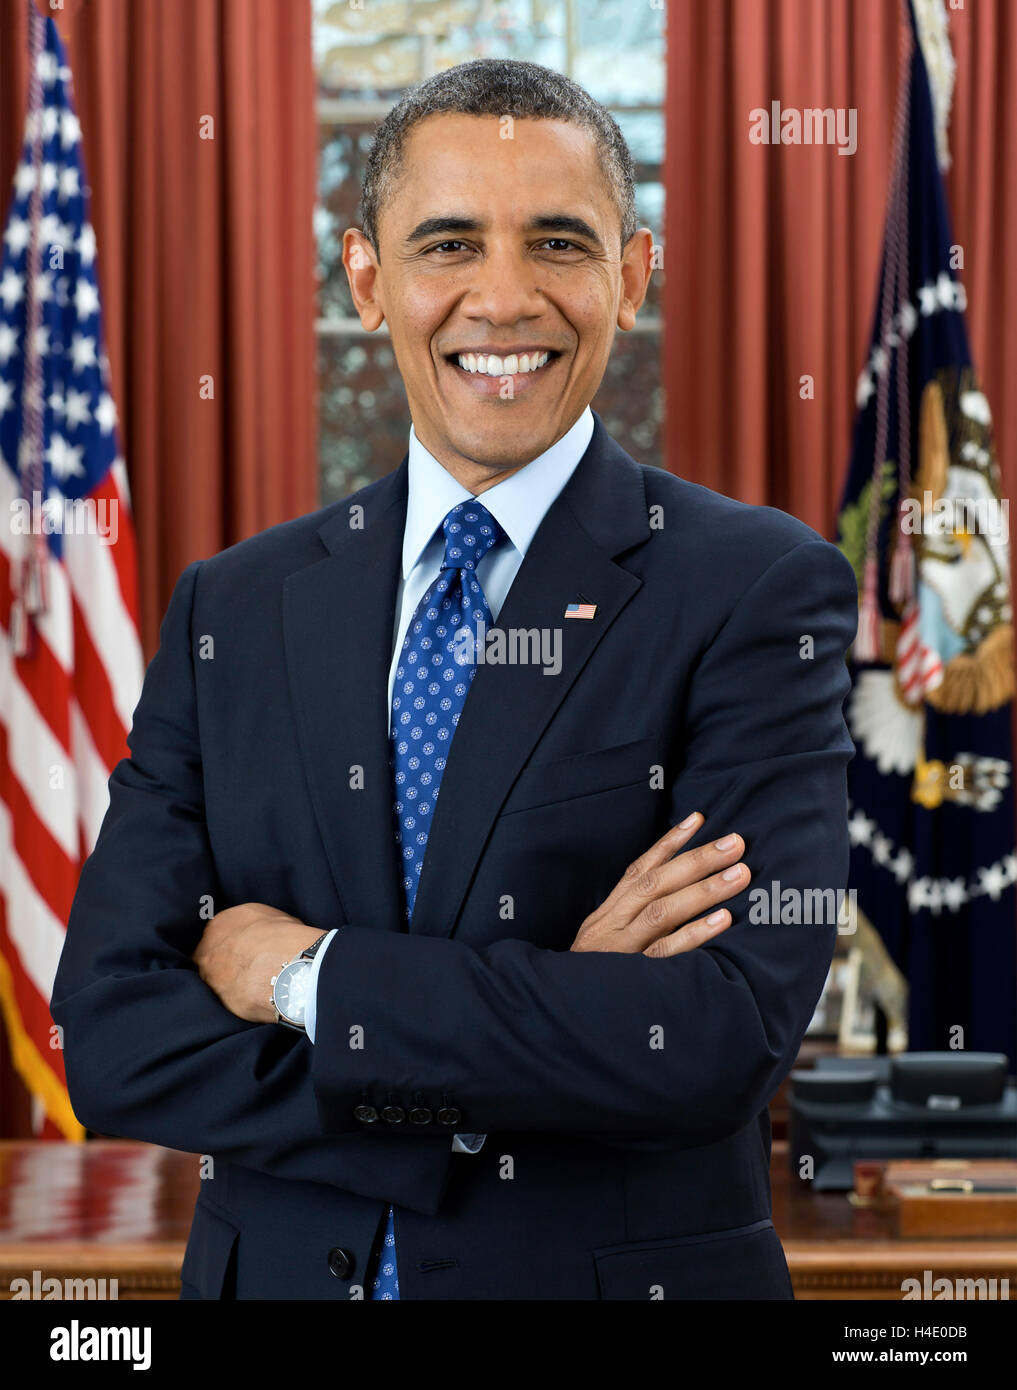 Barack Obama. Offizielles Weißes Haus Porträt von Barack Obama, dem 44th. Präsidenten der USA, Dezember 2012 Stockfoto